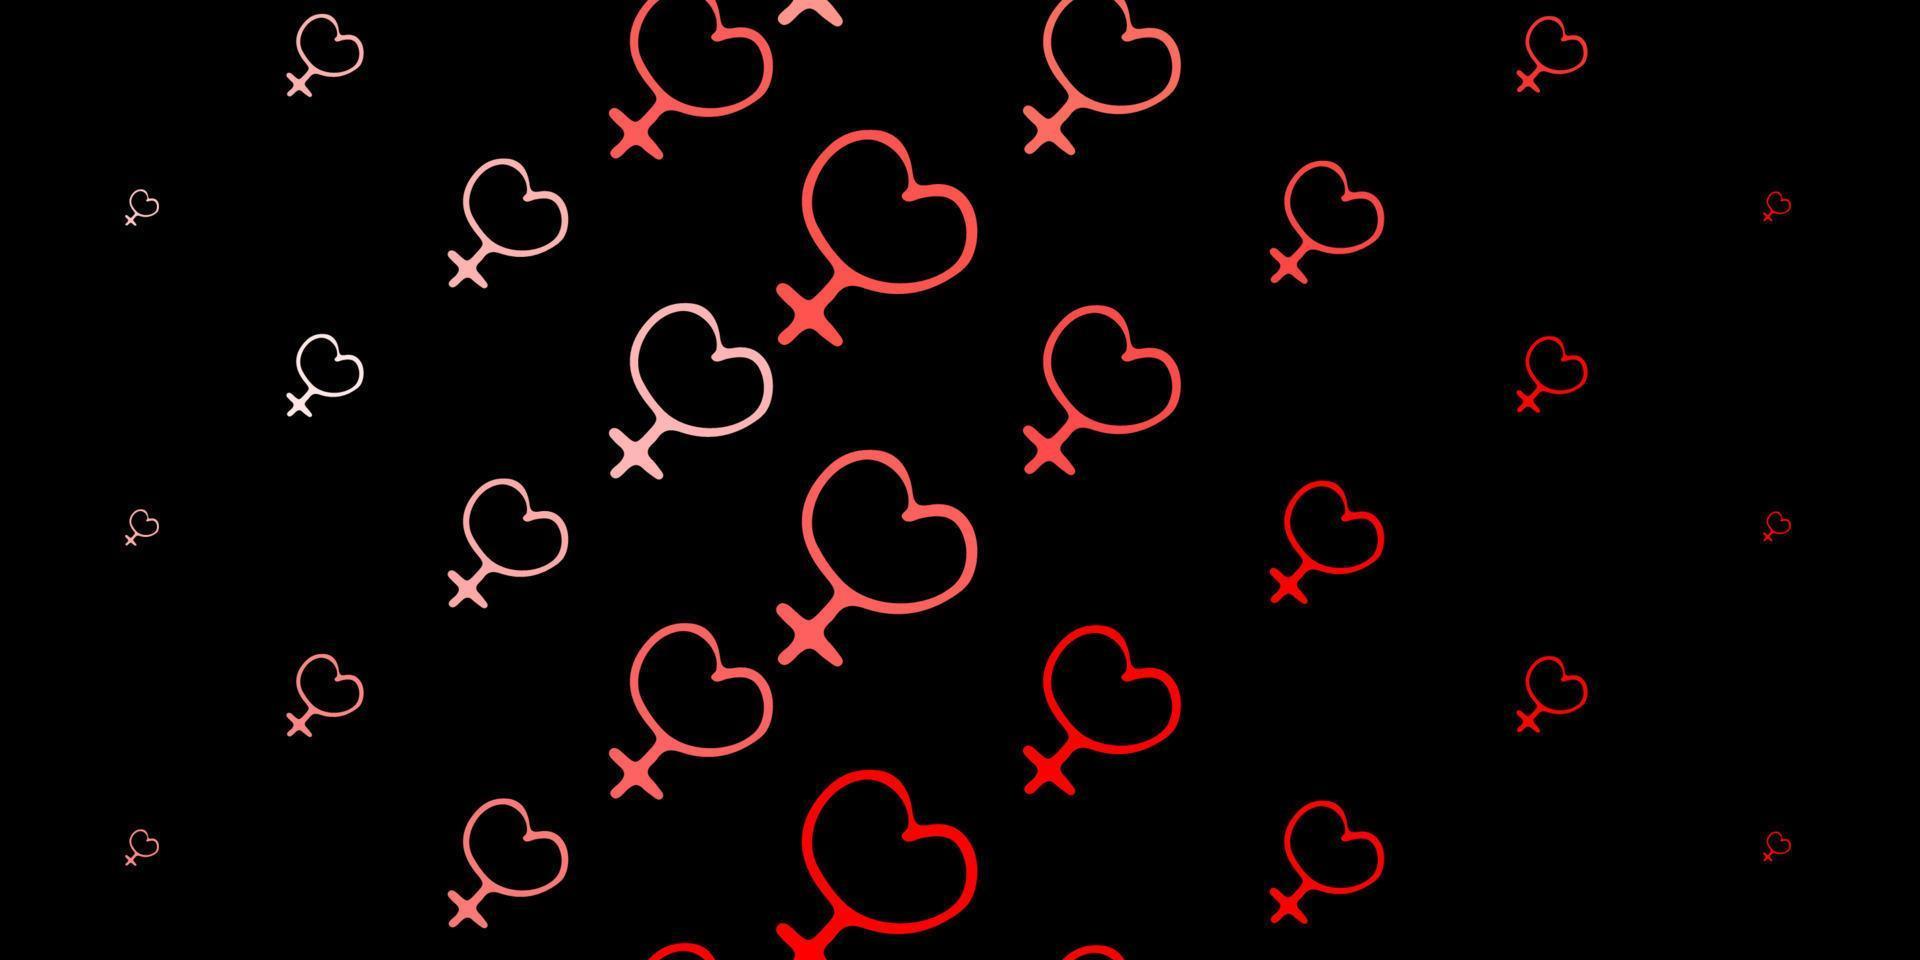 trama vettoriale rosso scuro con simboli dei diritti delle donne.